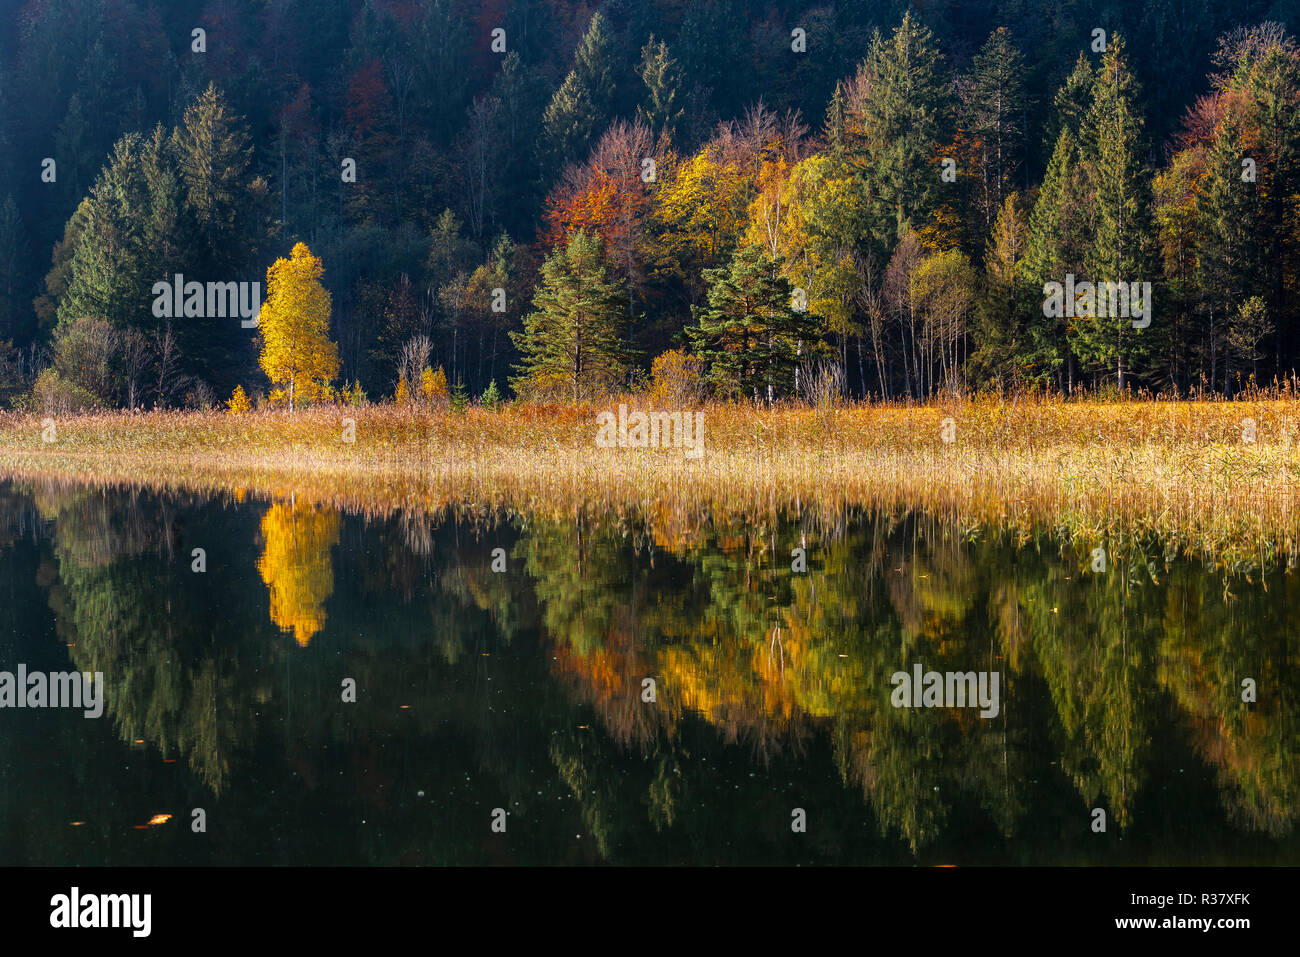 Water mirroring, autumn trees at Lake Schwansee, Füssen, Ostallgäu, Bavaria, Germany Stock Photo